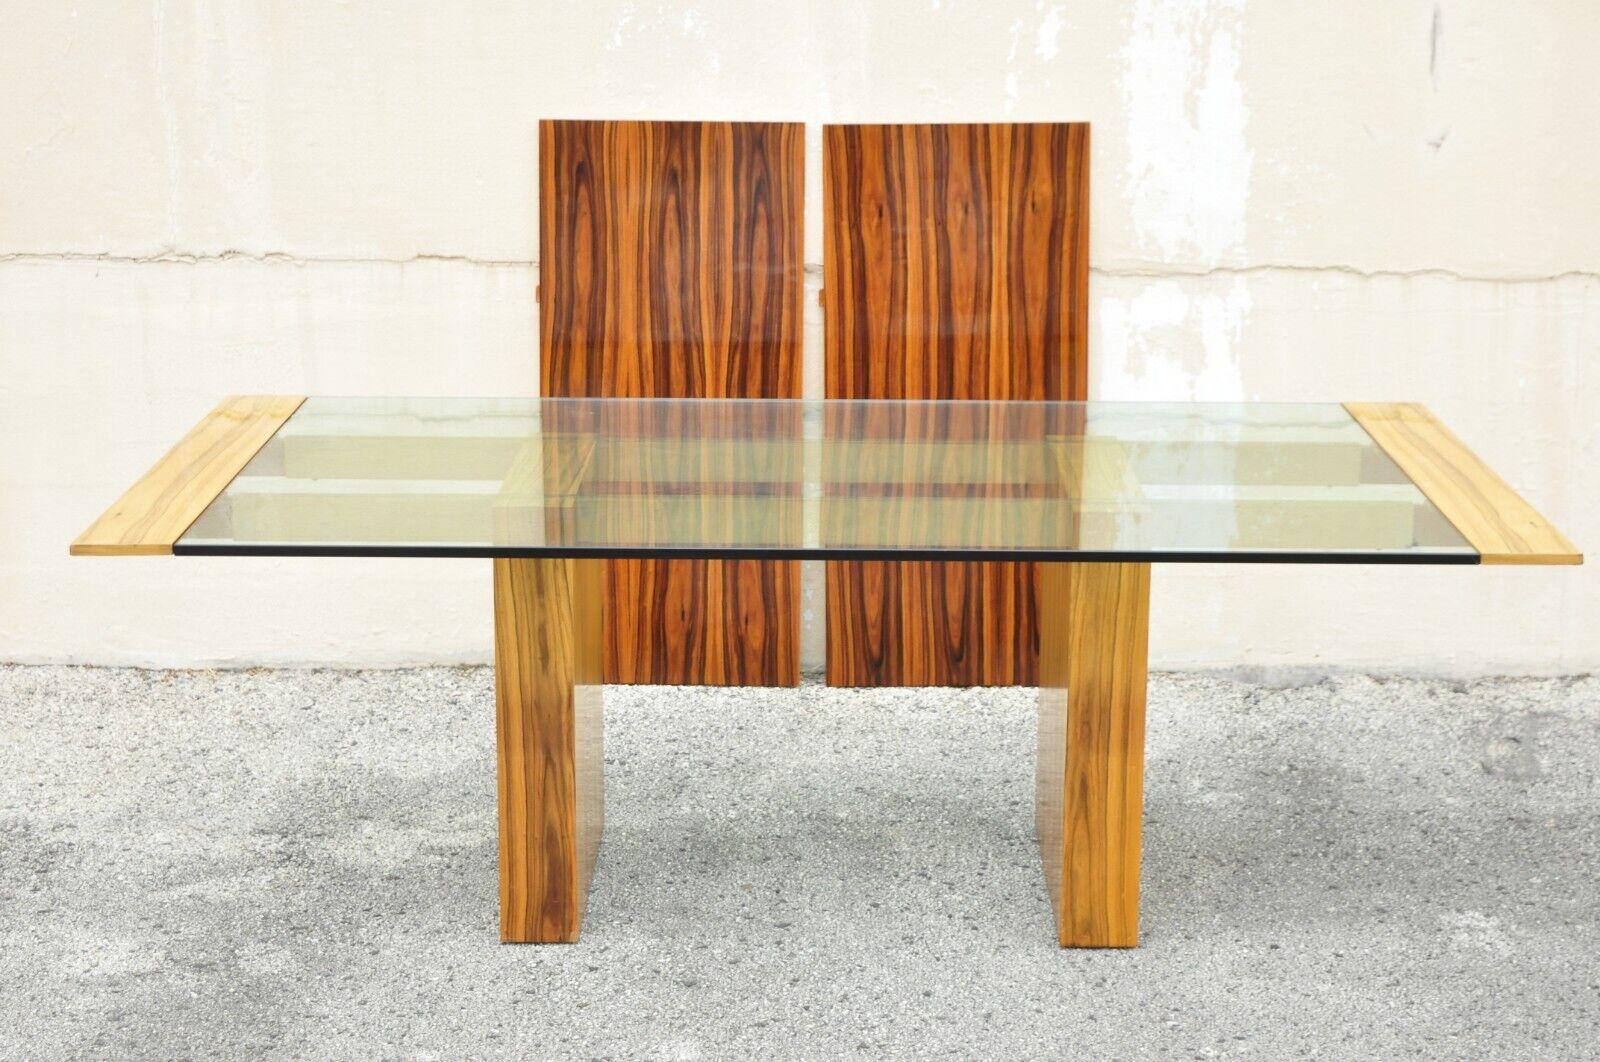 Ausladender Esstisch mit Glasplatte aus lackiertem Palisander und Messing, Vladimir Kagan zugeschrieben. Das Möbelstück hat eine dicke Glasplatte, einen doppelten Sockel, Stützen und Halterungen aus Messing/Bronze, eine schöne Holzmaserung, klare